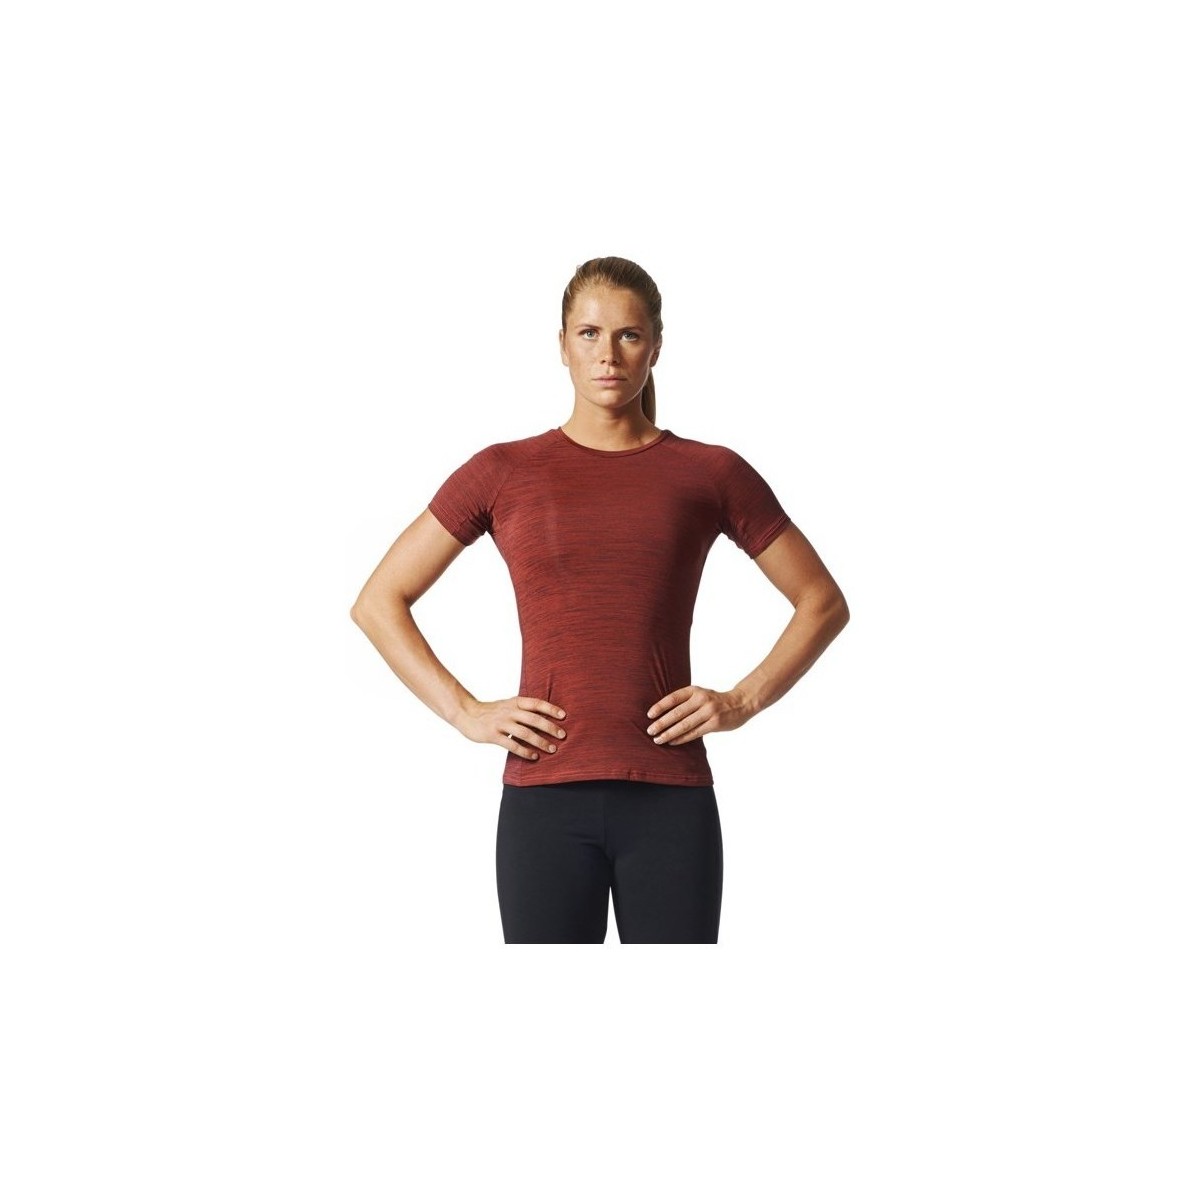 Vêtements Femme T-shirts manches courtes adidas Originals Performance Tee Noir, Rouge